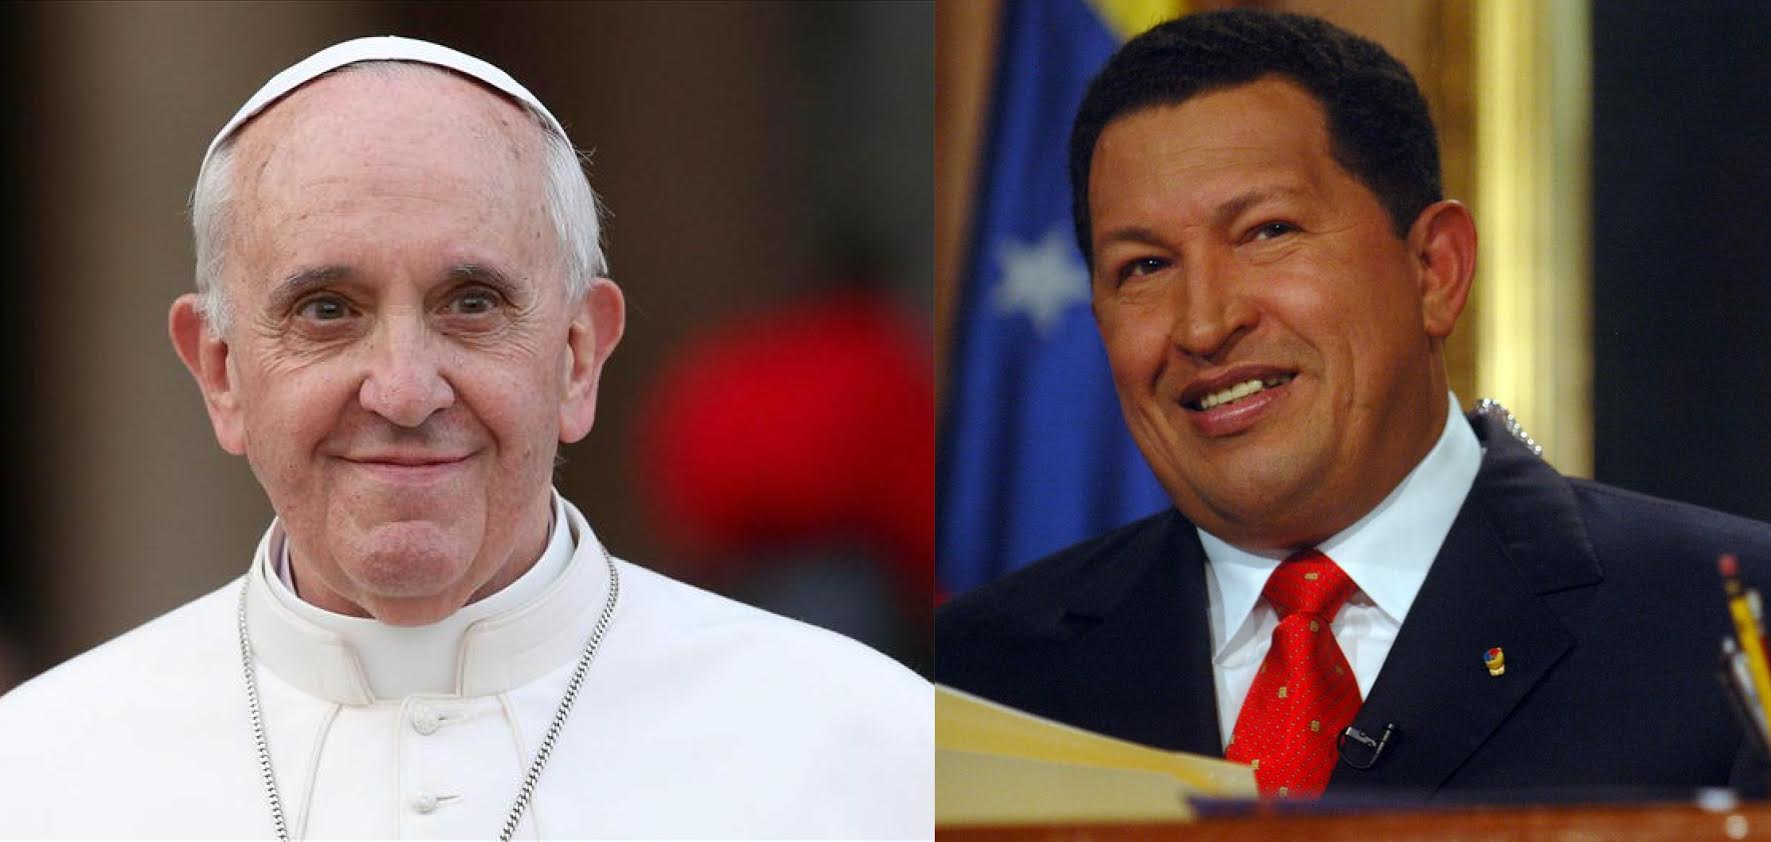 Las voces del Papa y Chávez se unen para abogar por acuerdos